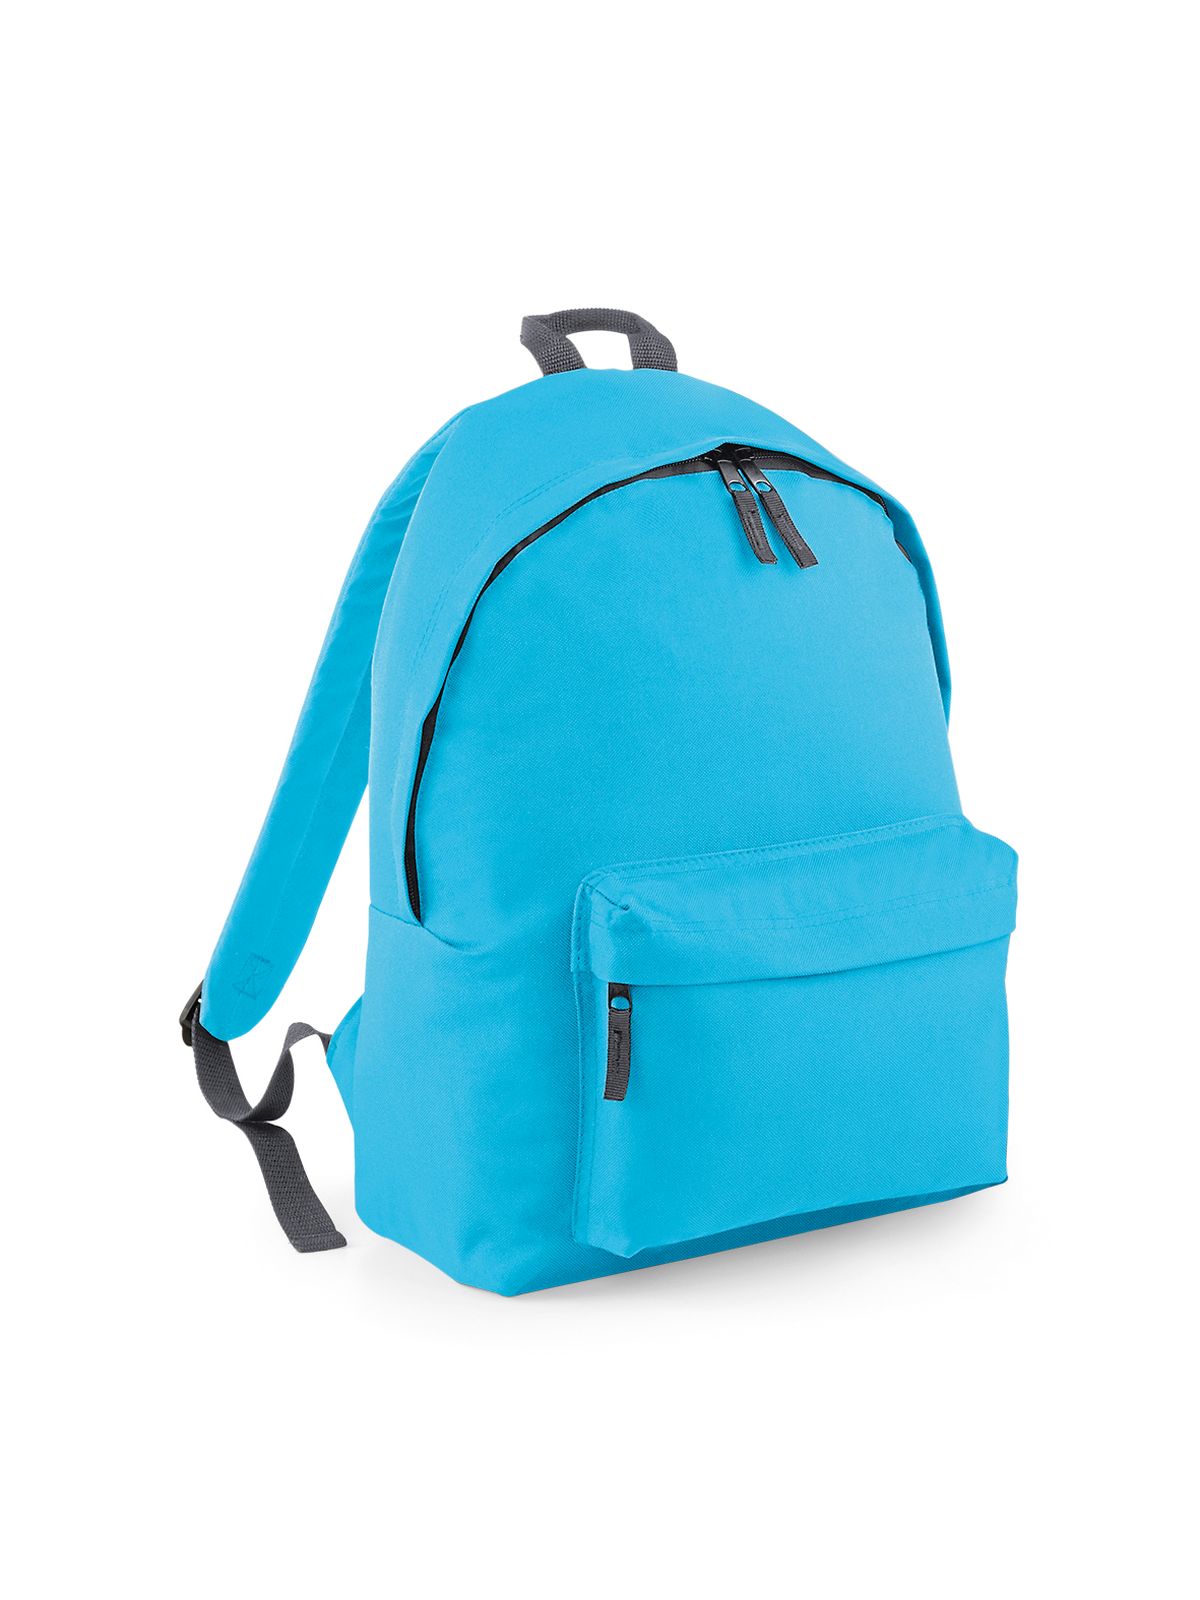 junior-fashion-backpack-surf-blue-graphite-grey.webp